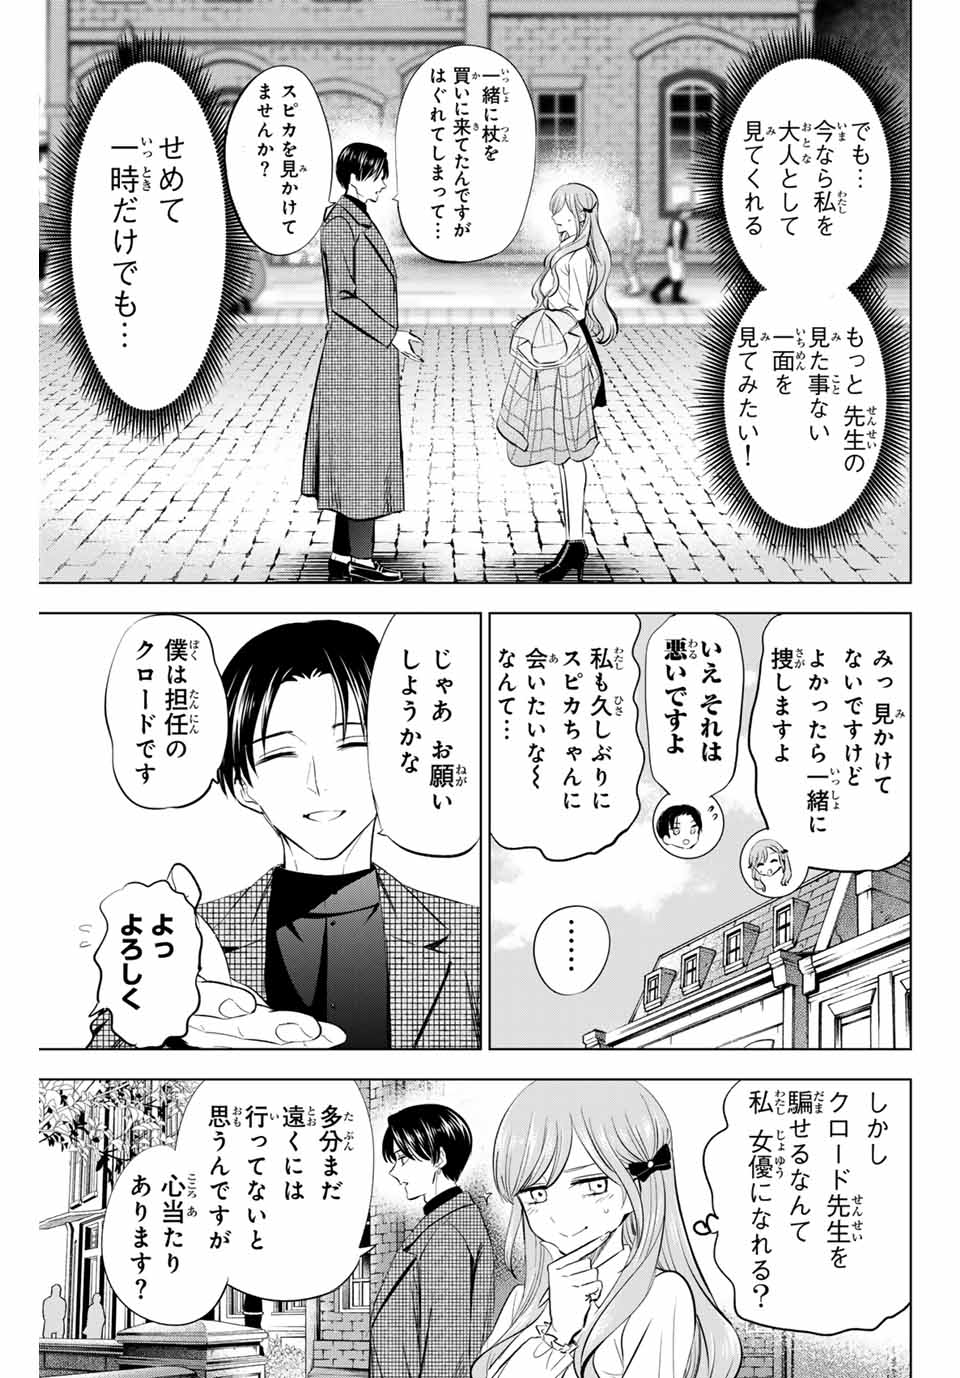 Kuroneko to Majo no Kyoushitsu - Chapter 60 - Page 5